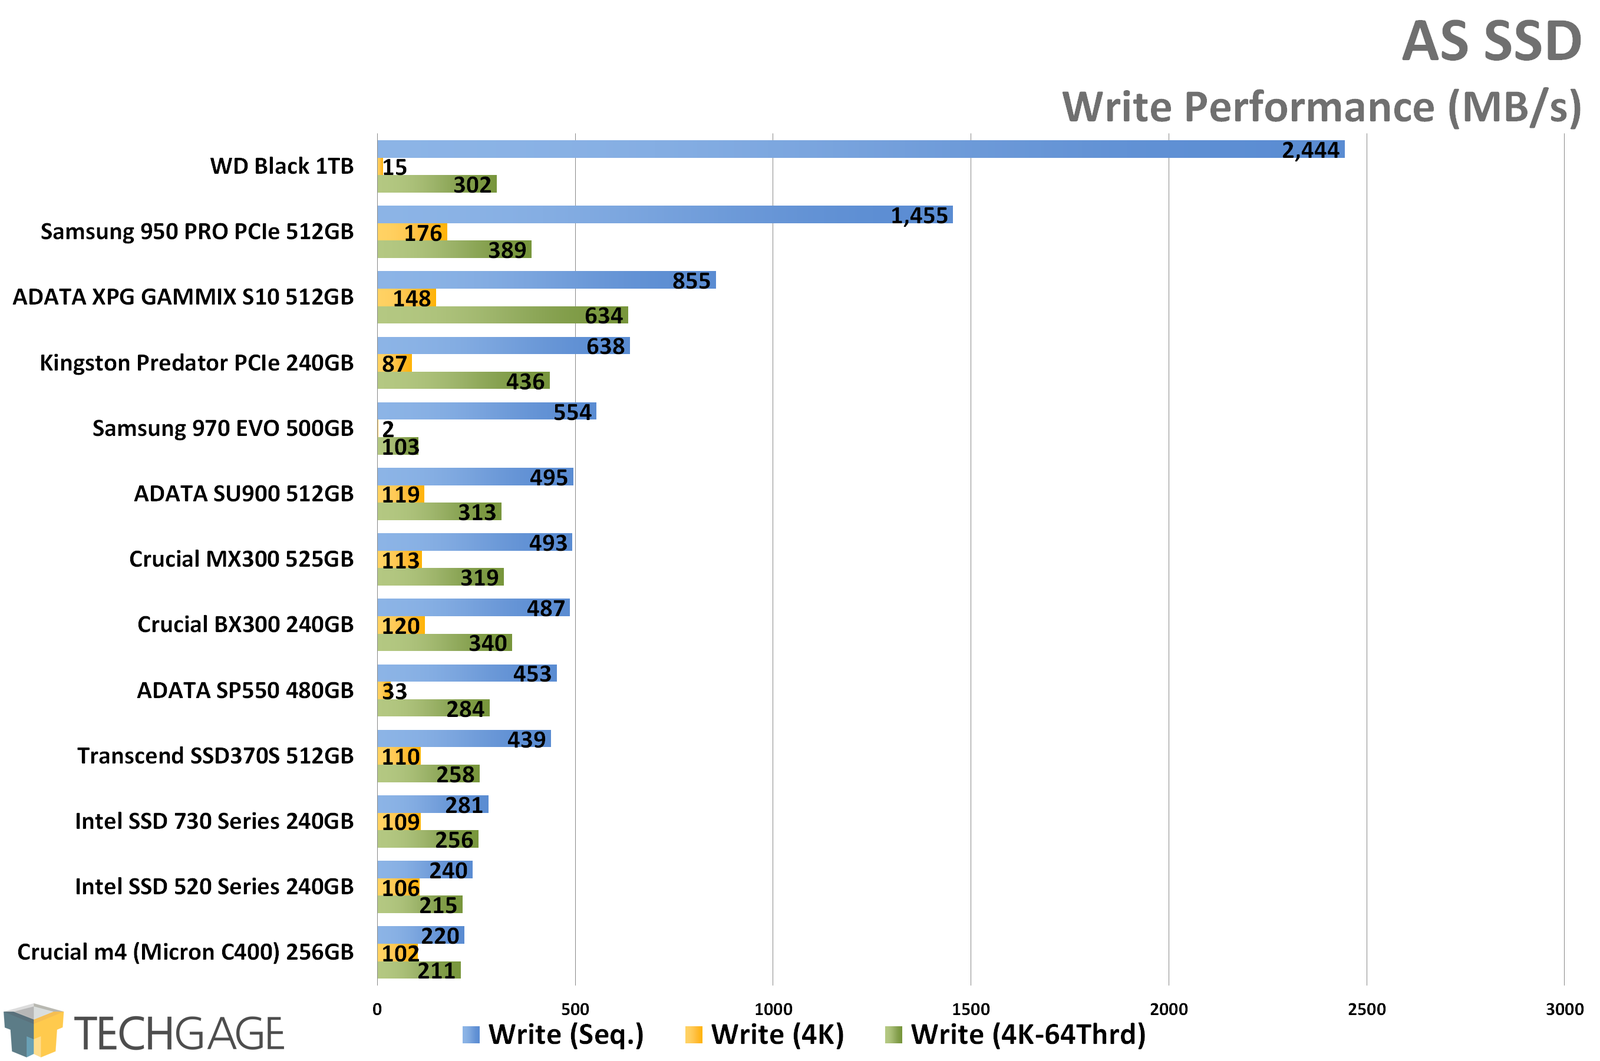 AS SSD Write Performance (WD Black 1TB NVMe SSD)